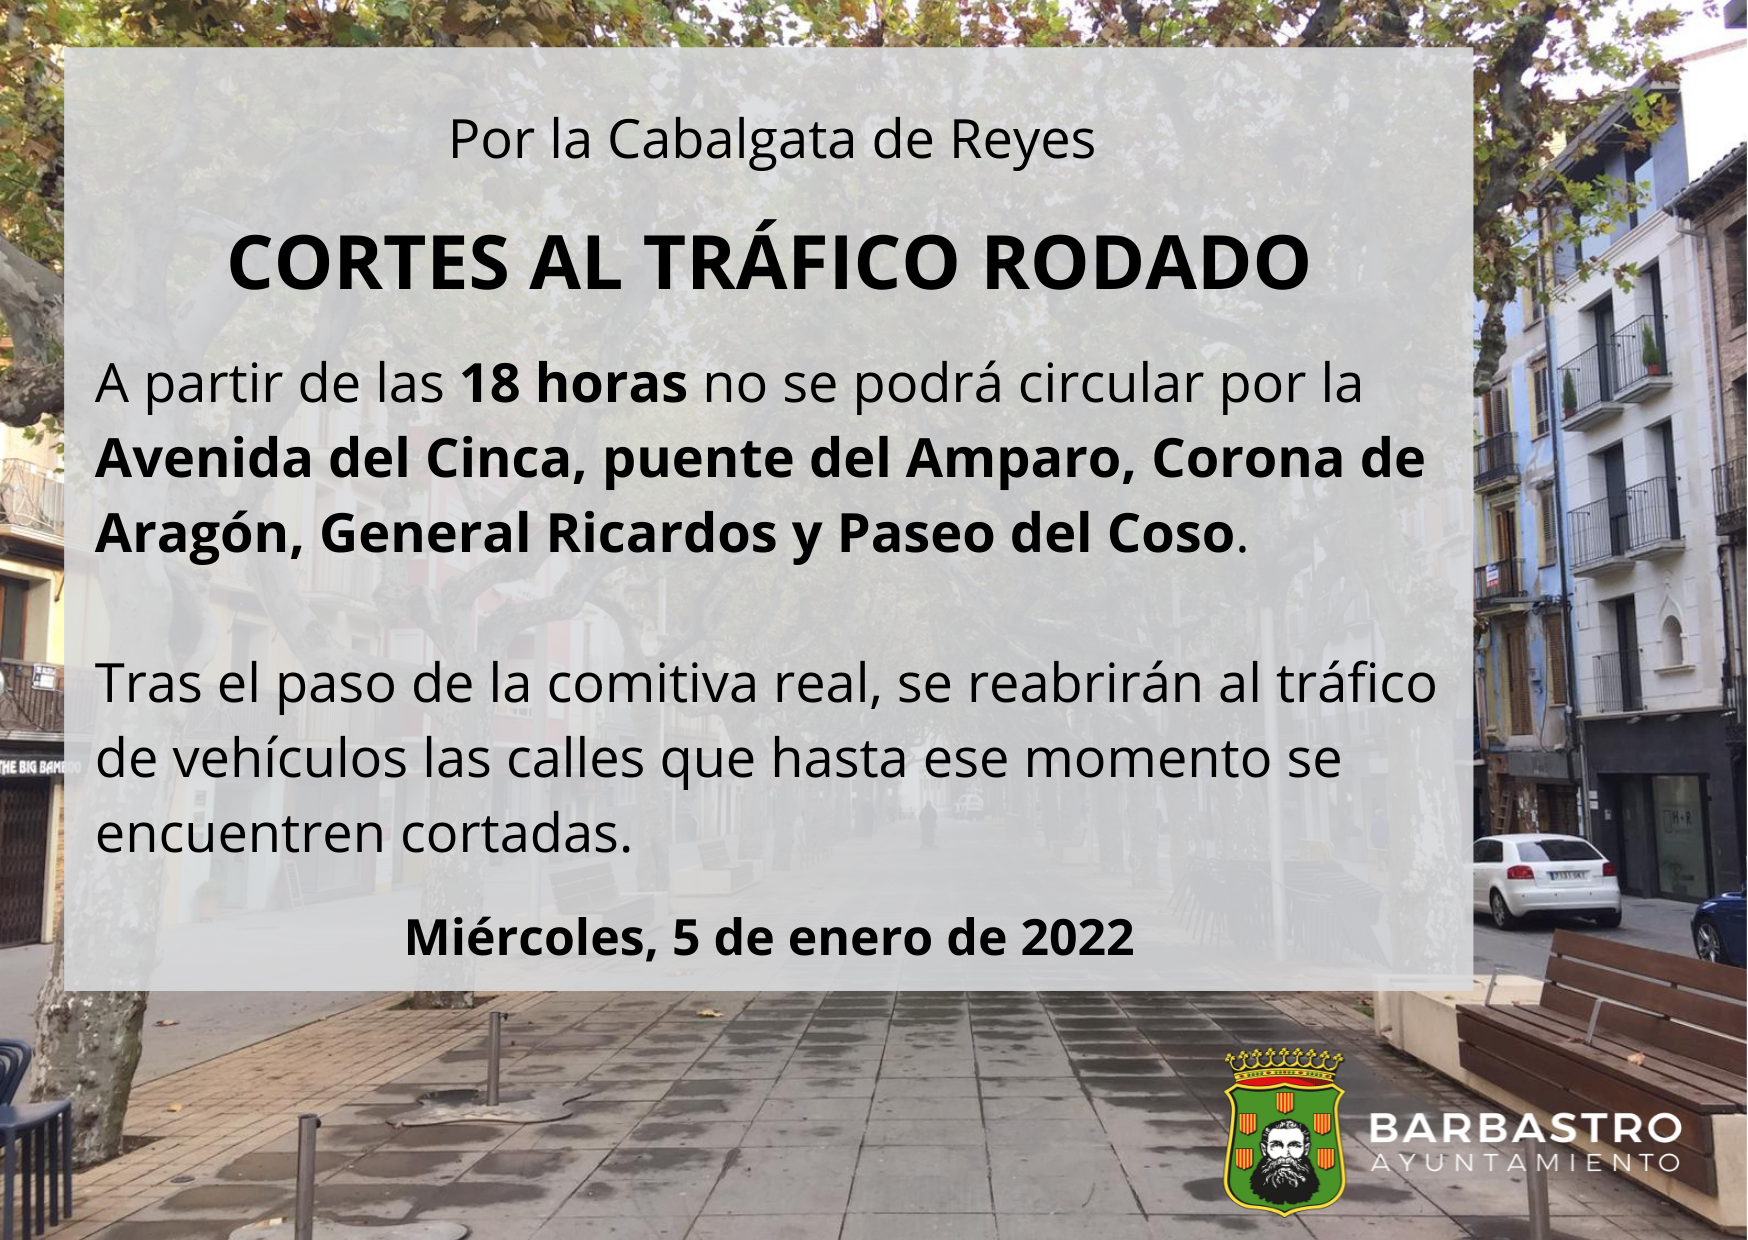 Restricciones al tráfico con motivo de la Cabalgata de Reyes